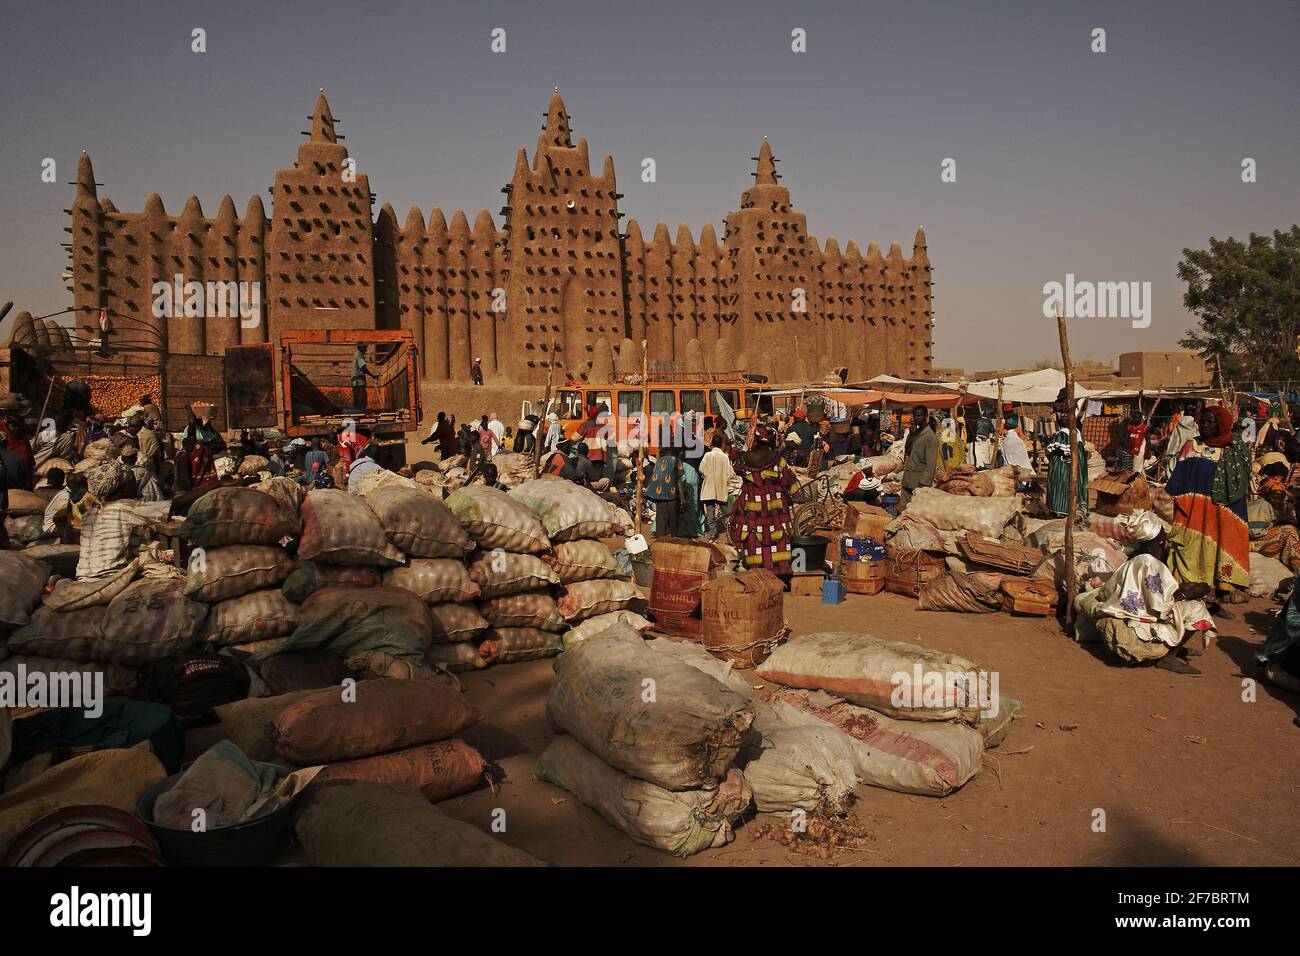 Mercato di Djenne, Mali, Africa occidentale. Grande Moschea di Djenne sullo sfondo. Foto Stock